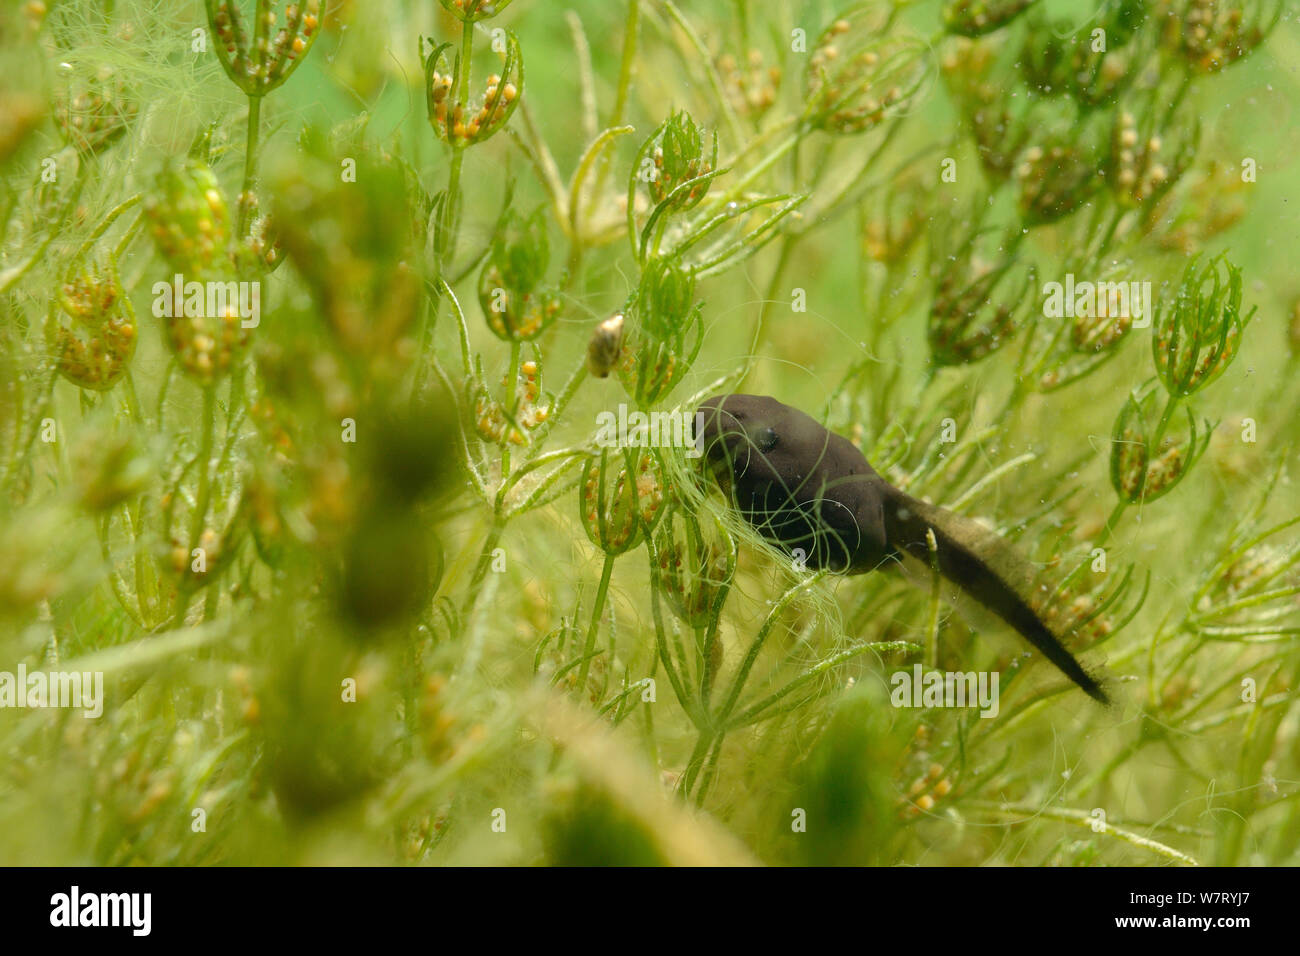 Settimana vecchia Rana comune girino (Rana temporaria pascolo stonewort delicati (Chara virgata) alghe in un laghetto di acqua dolce, Wiltshire, Regno Unito, Giugno. Foto Stock